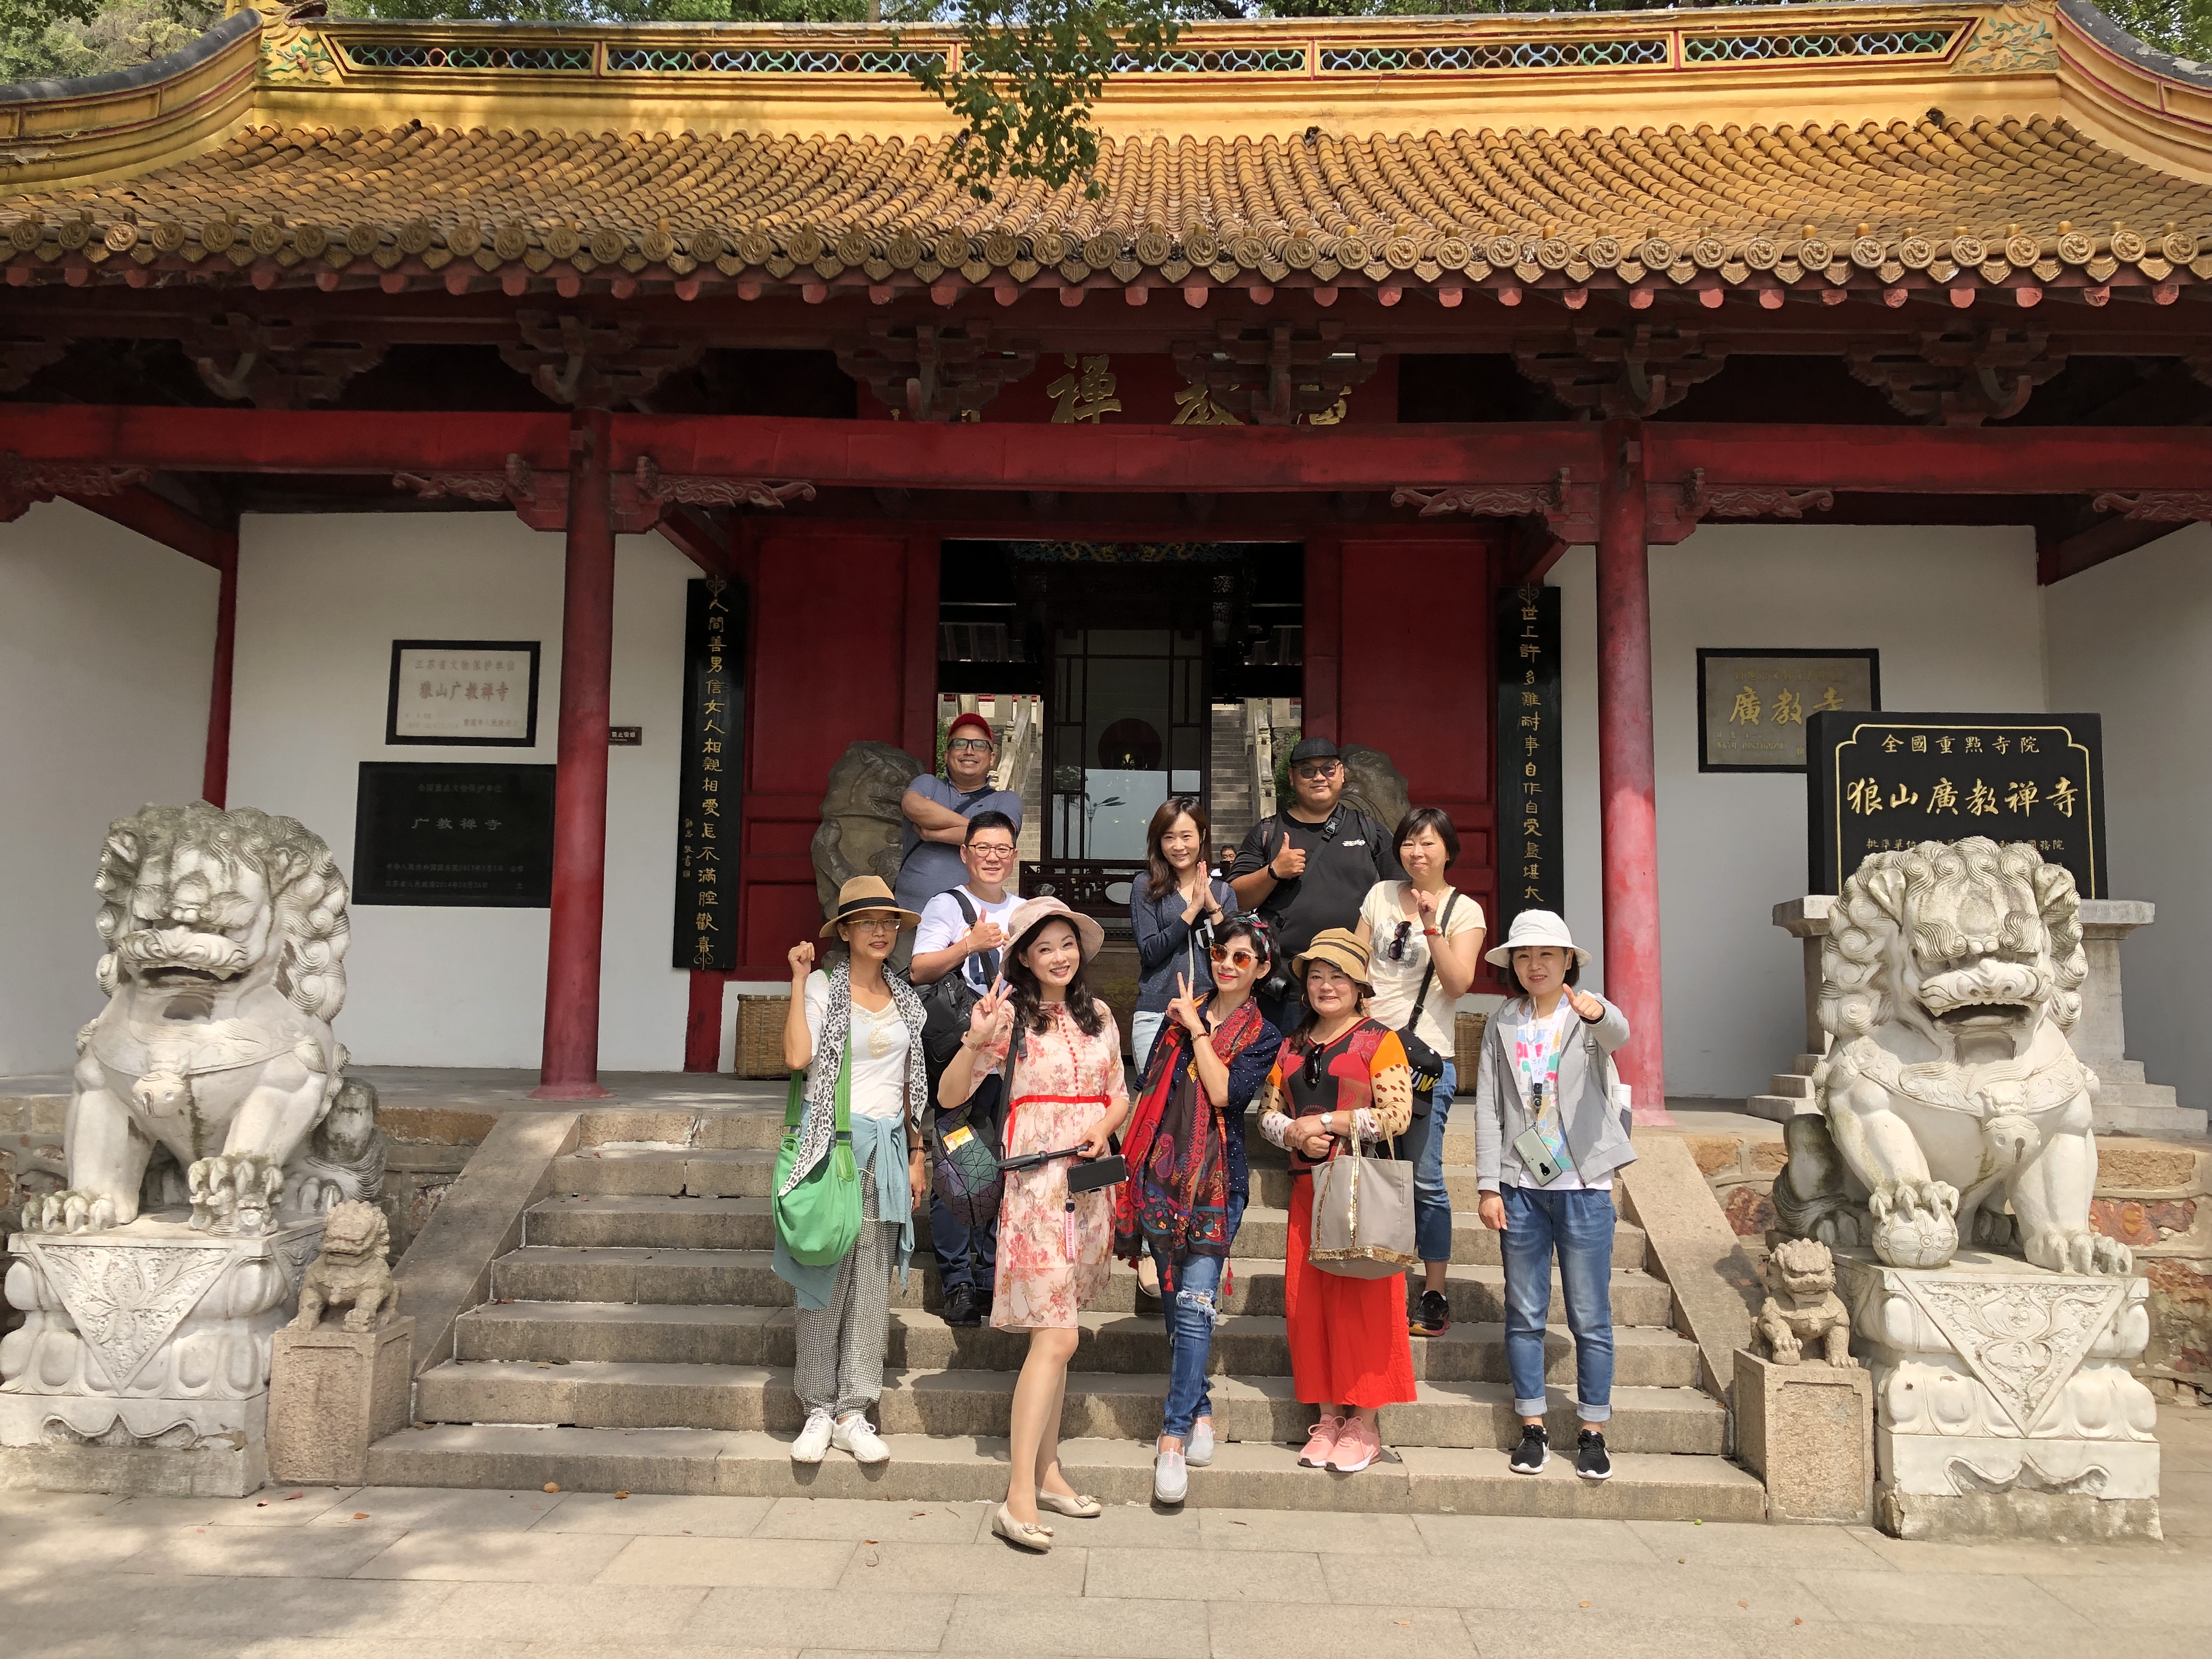 江苏省文化和旅游厅焦点新闻台湾旅游美食达人走进南通